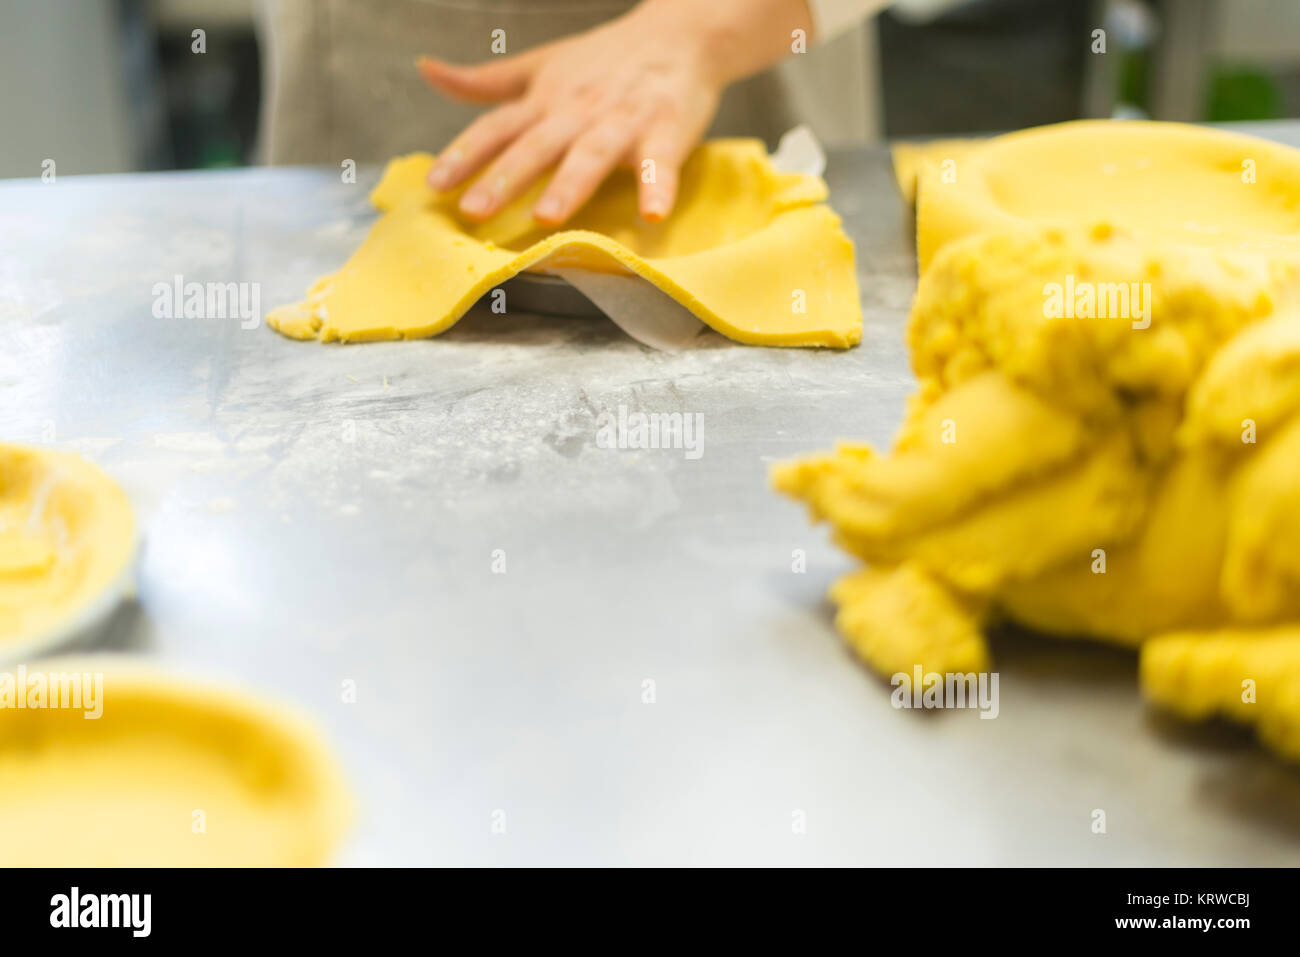 Chef Gebäck Bäcker Frau Vorbereitung und Ausarbeitung der dought mit Eiern Olivenöl Mehl Salz und Wasser für die Schaffung von Kuchen Cookies und Süßigkeiten gemacht. Stockfoto